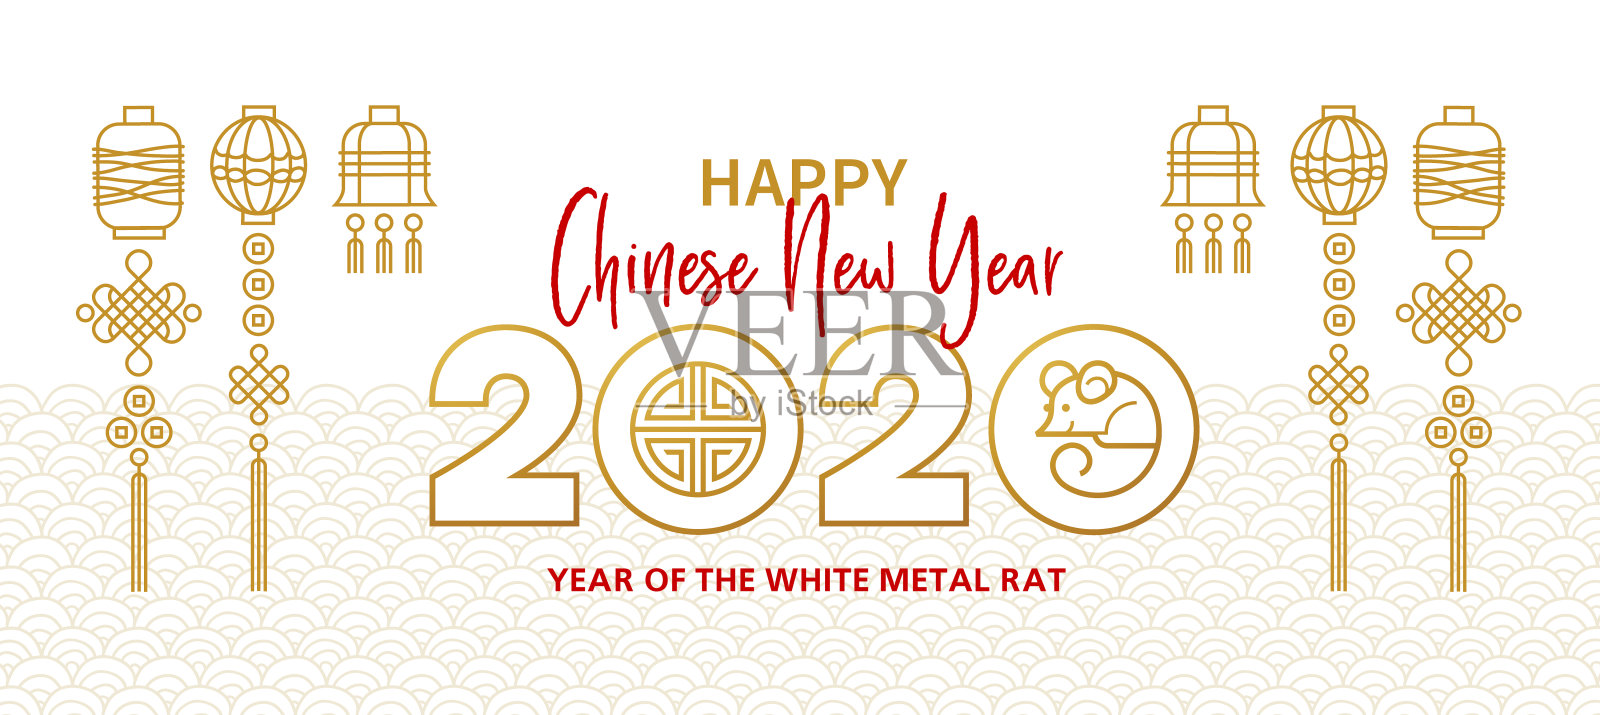 卡片上印有中国农历2020年的白色金属老鼠图案。设计模板素材